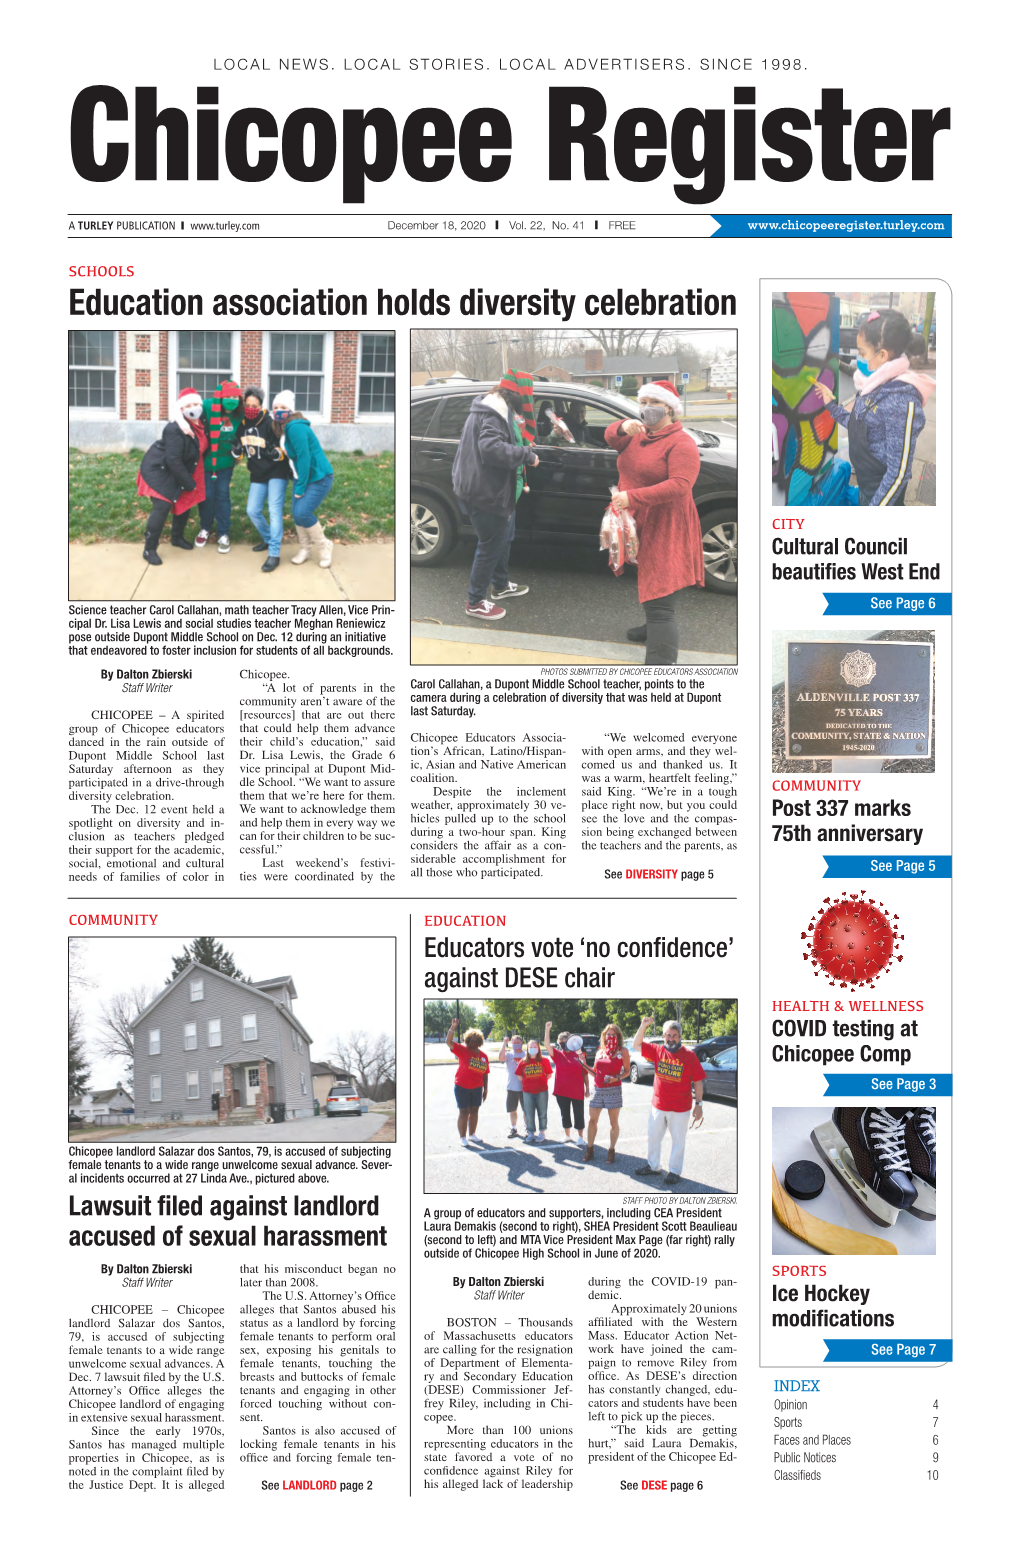 Education Association Holds Diversity Celebration